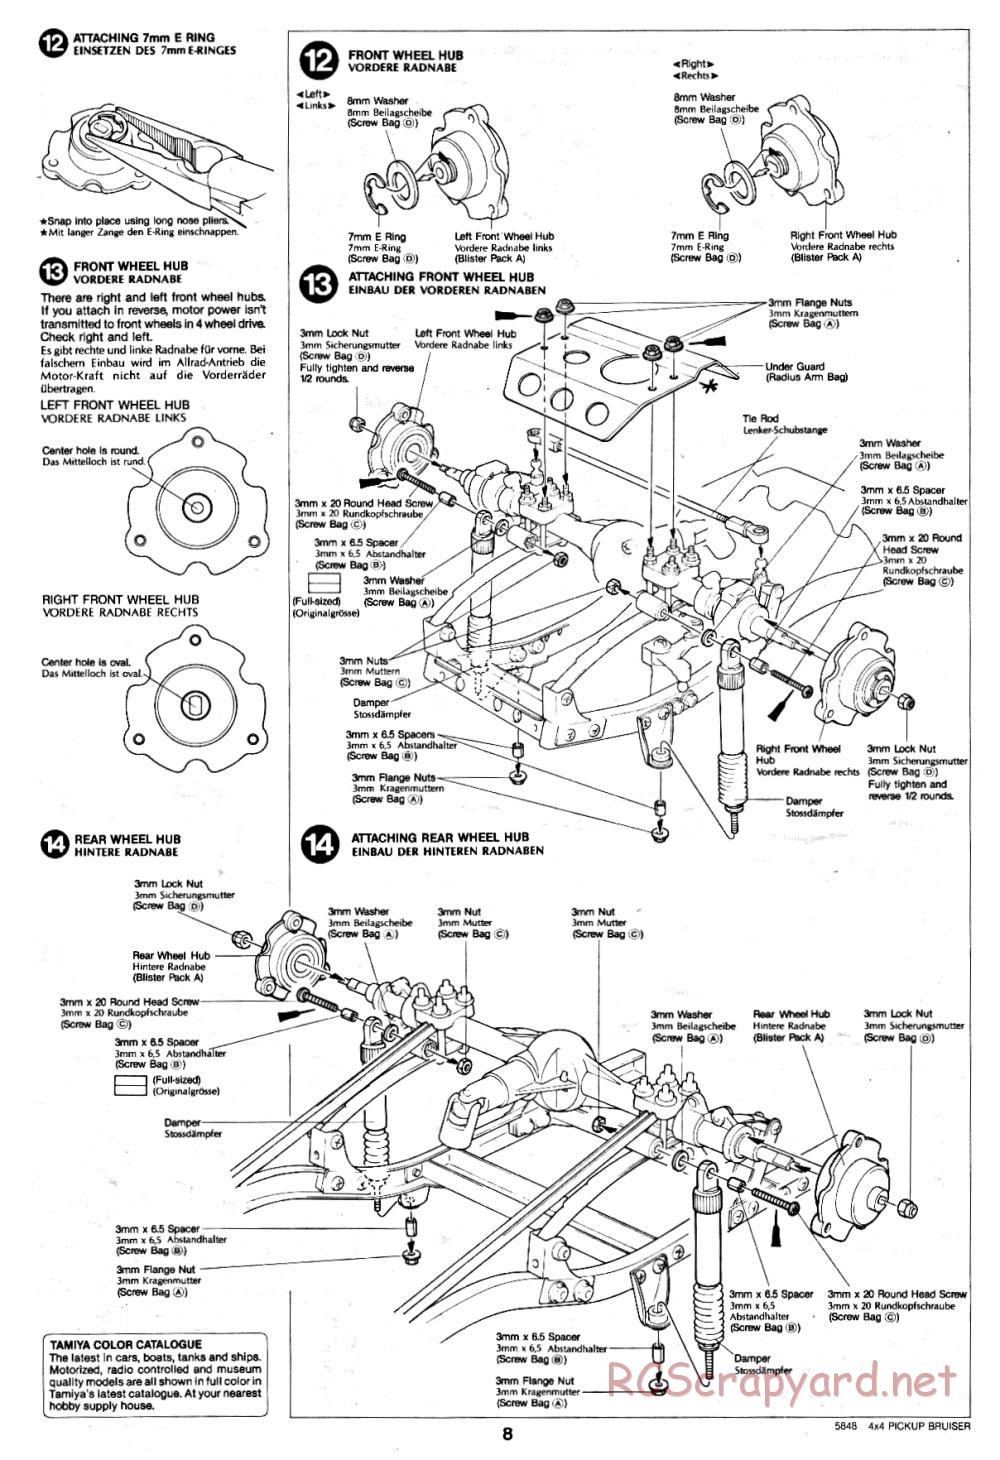 Tamiya - Toyota 4x4 Pick-Up Bruiser - 58048 - Manual - Page 8